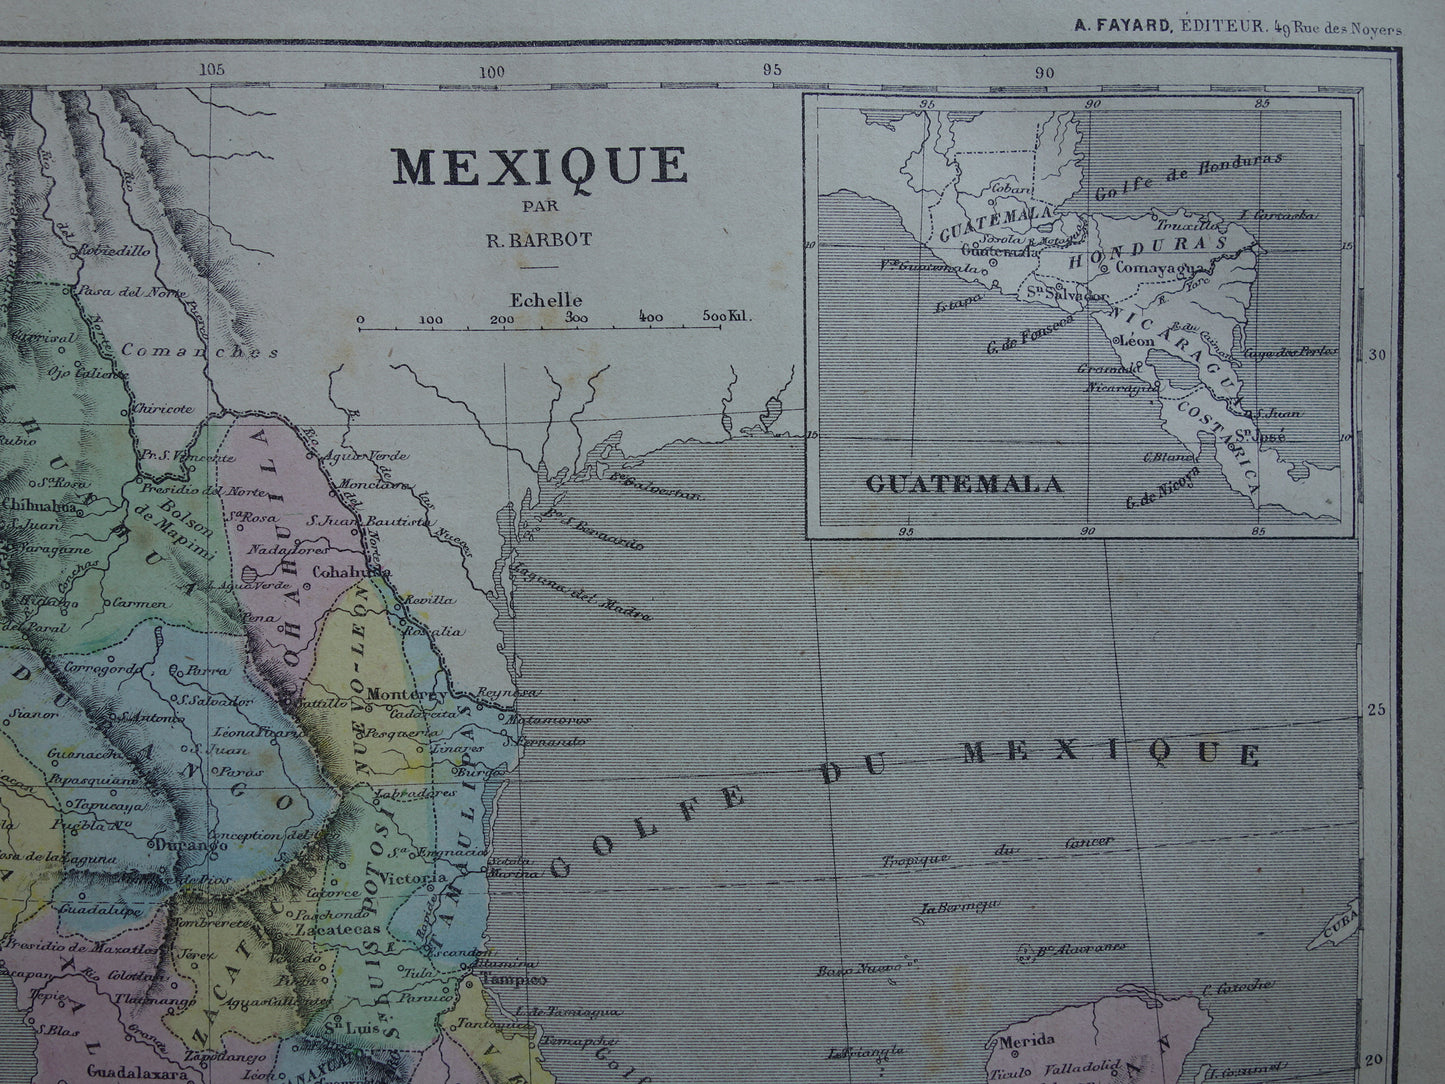 MEXICO oude handgekleurde kaart van Mexico uit 1877 originele antieke Franse landkaart